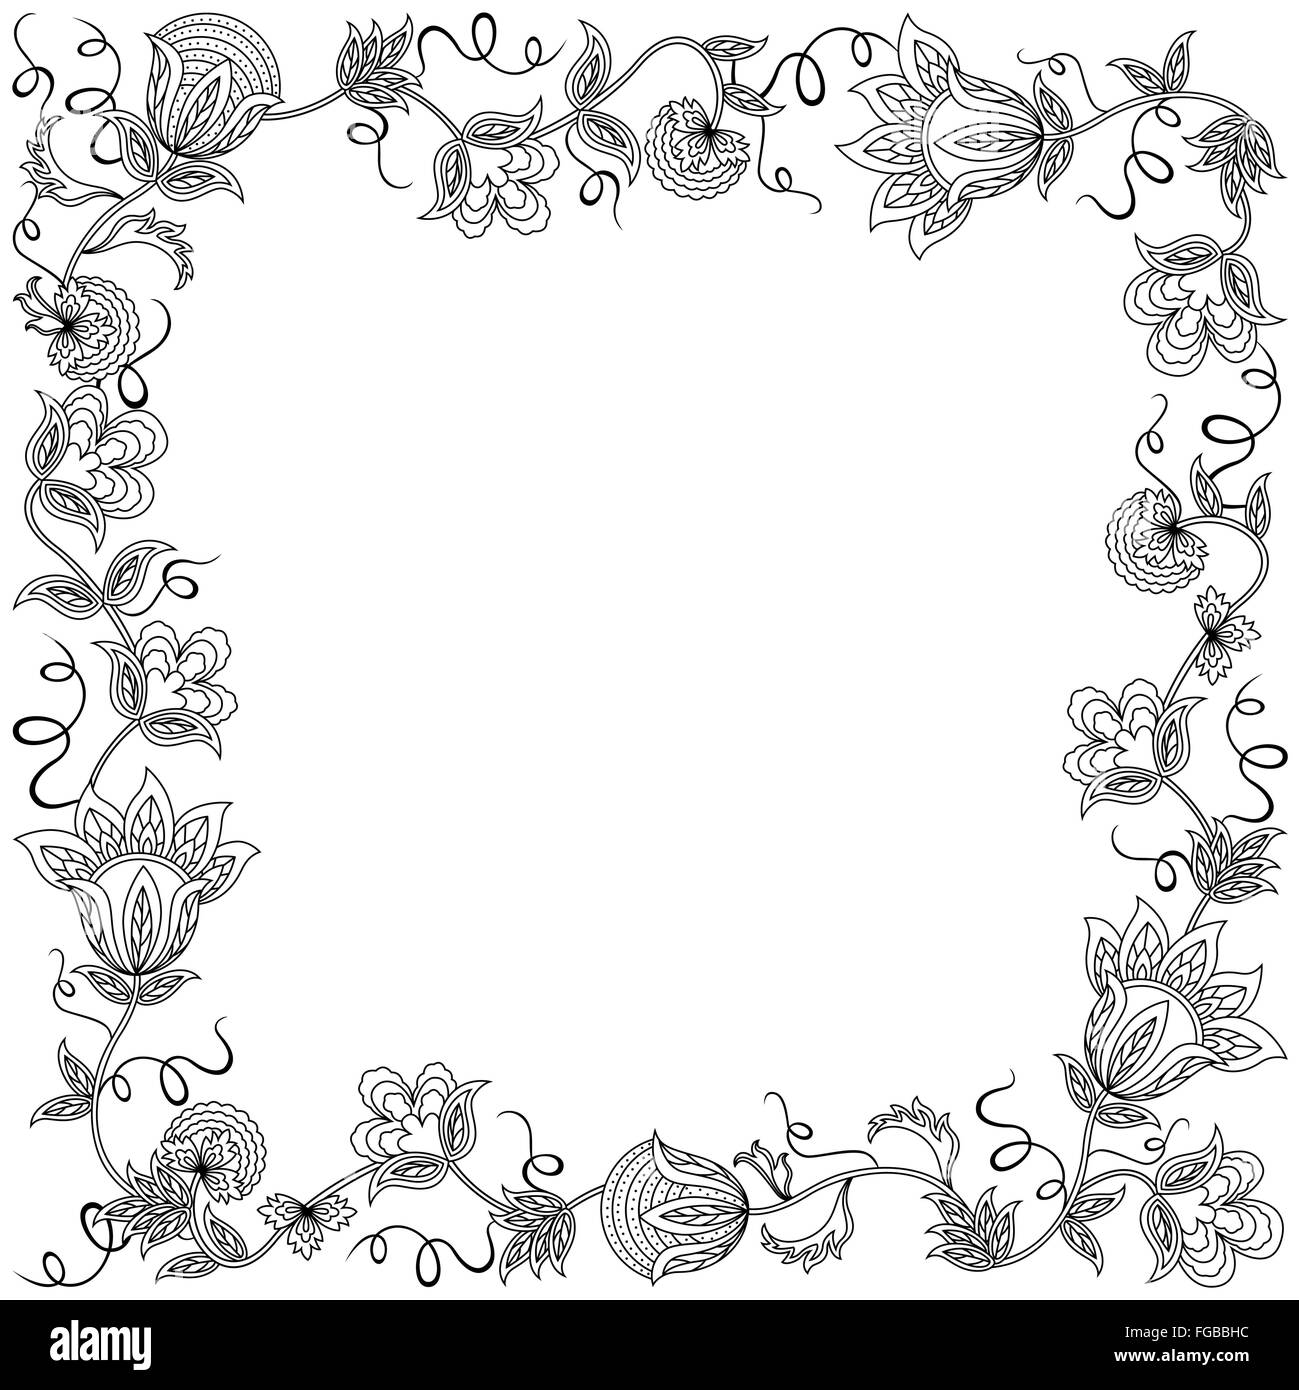 Carte postale avec guirlande de fleurs magnifiques et d'autres éléments floraux, dessin à la main contour vectoriel Illustration de Vecteur